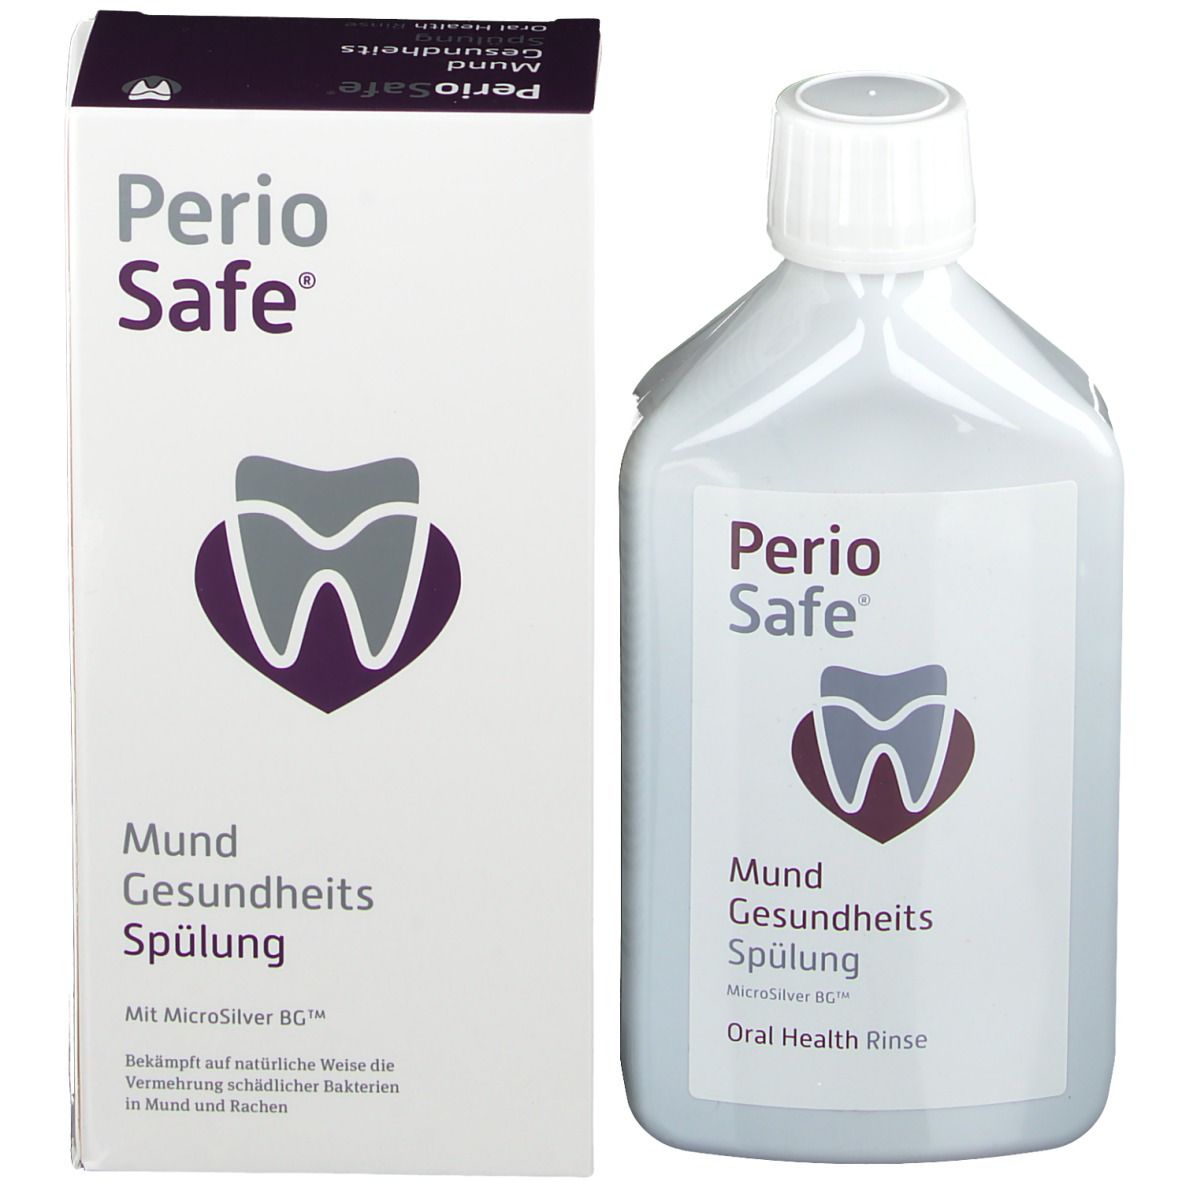 PerioSafe® Mundgesundheits-Spülung